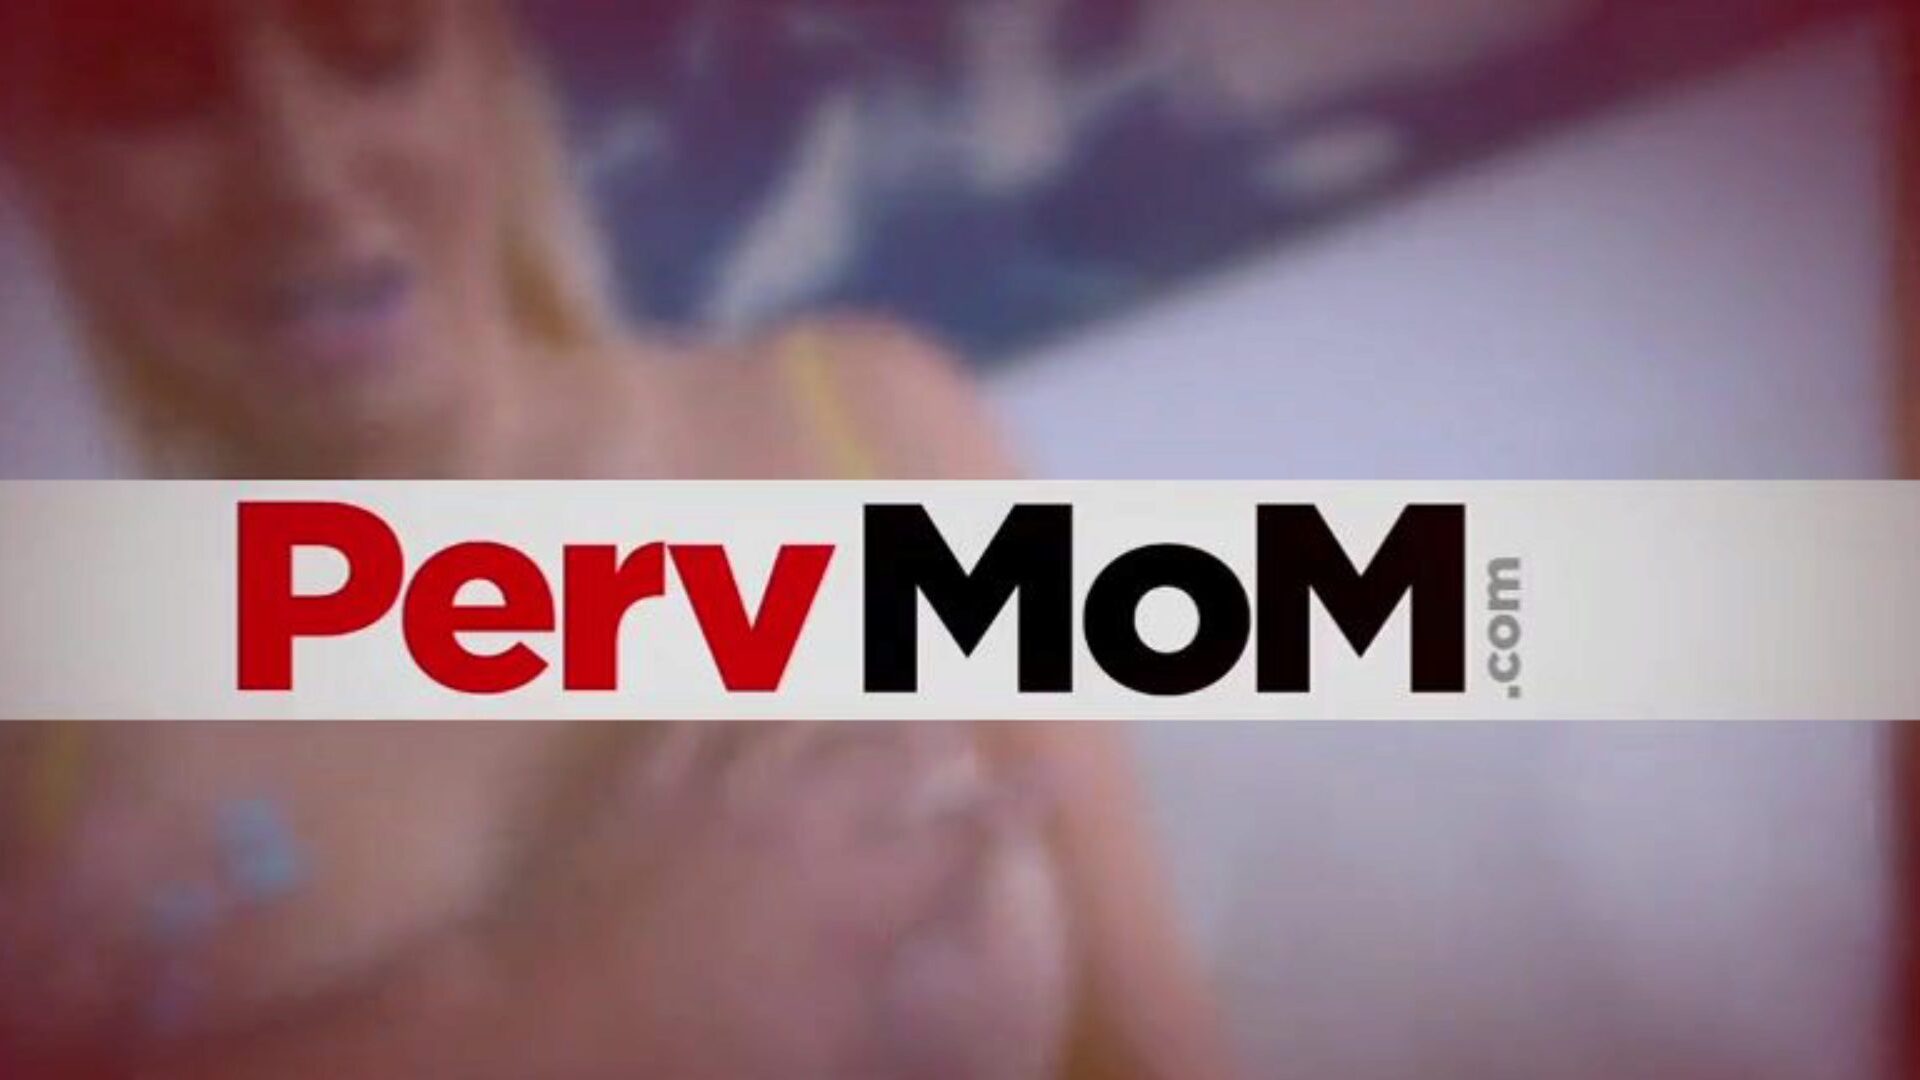 pervmom - אמא חורגת נרגשת מינית קריסי לין רוצה לזיין שוב